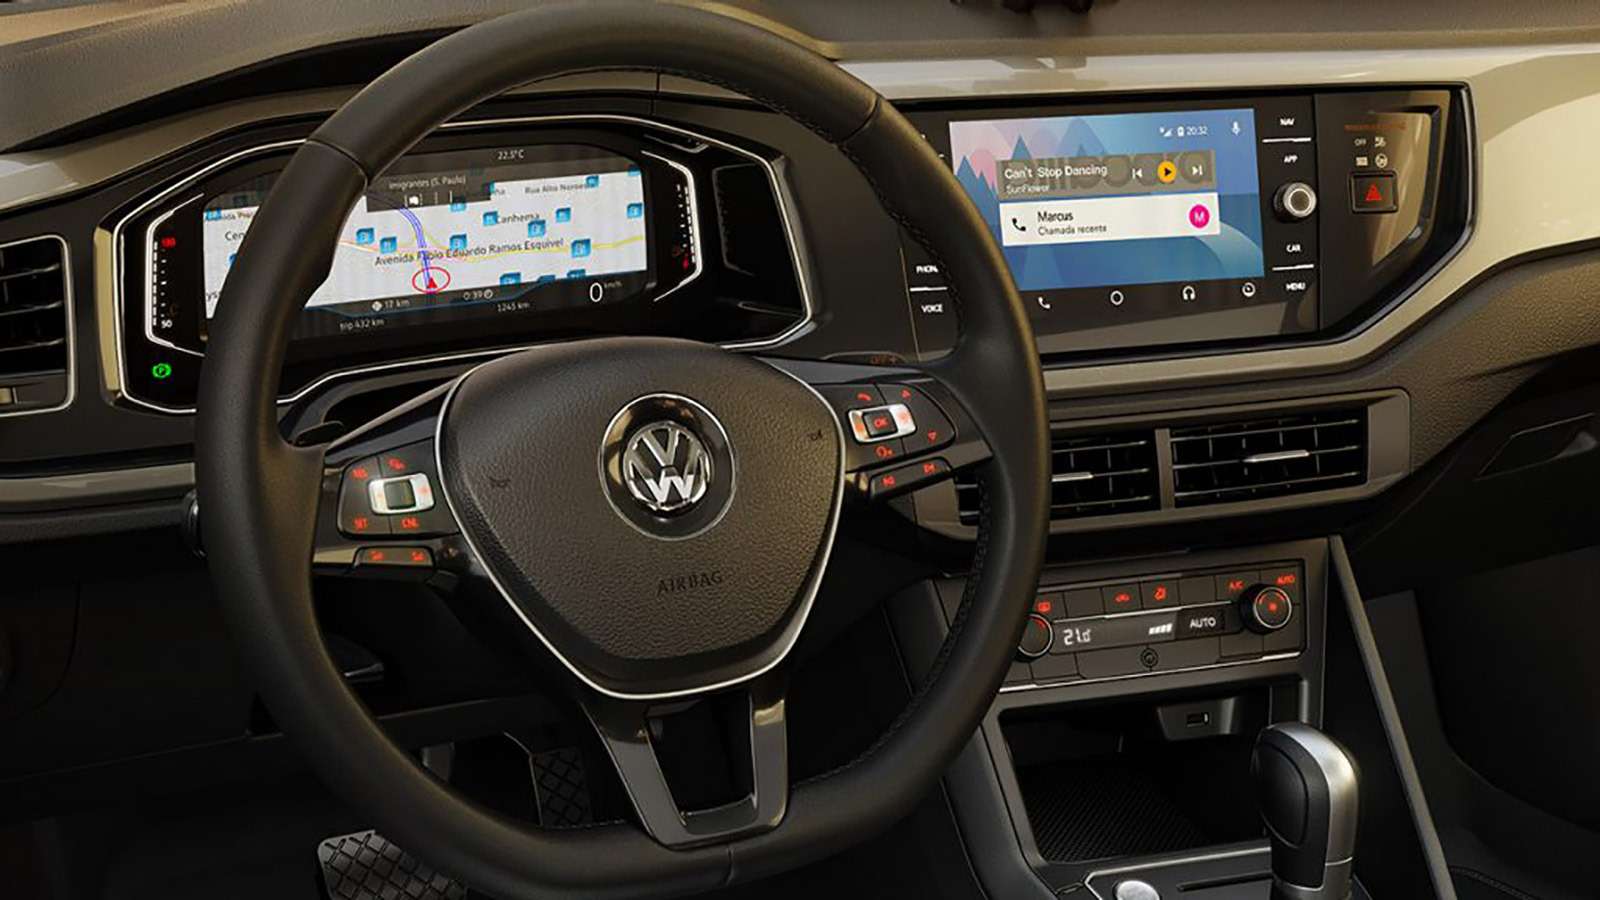 Совсем новый седан Volkswagen Polo — информация и фото — фото 817116